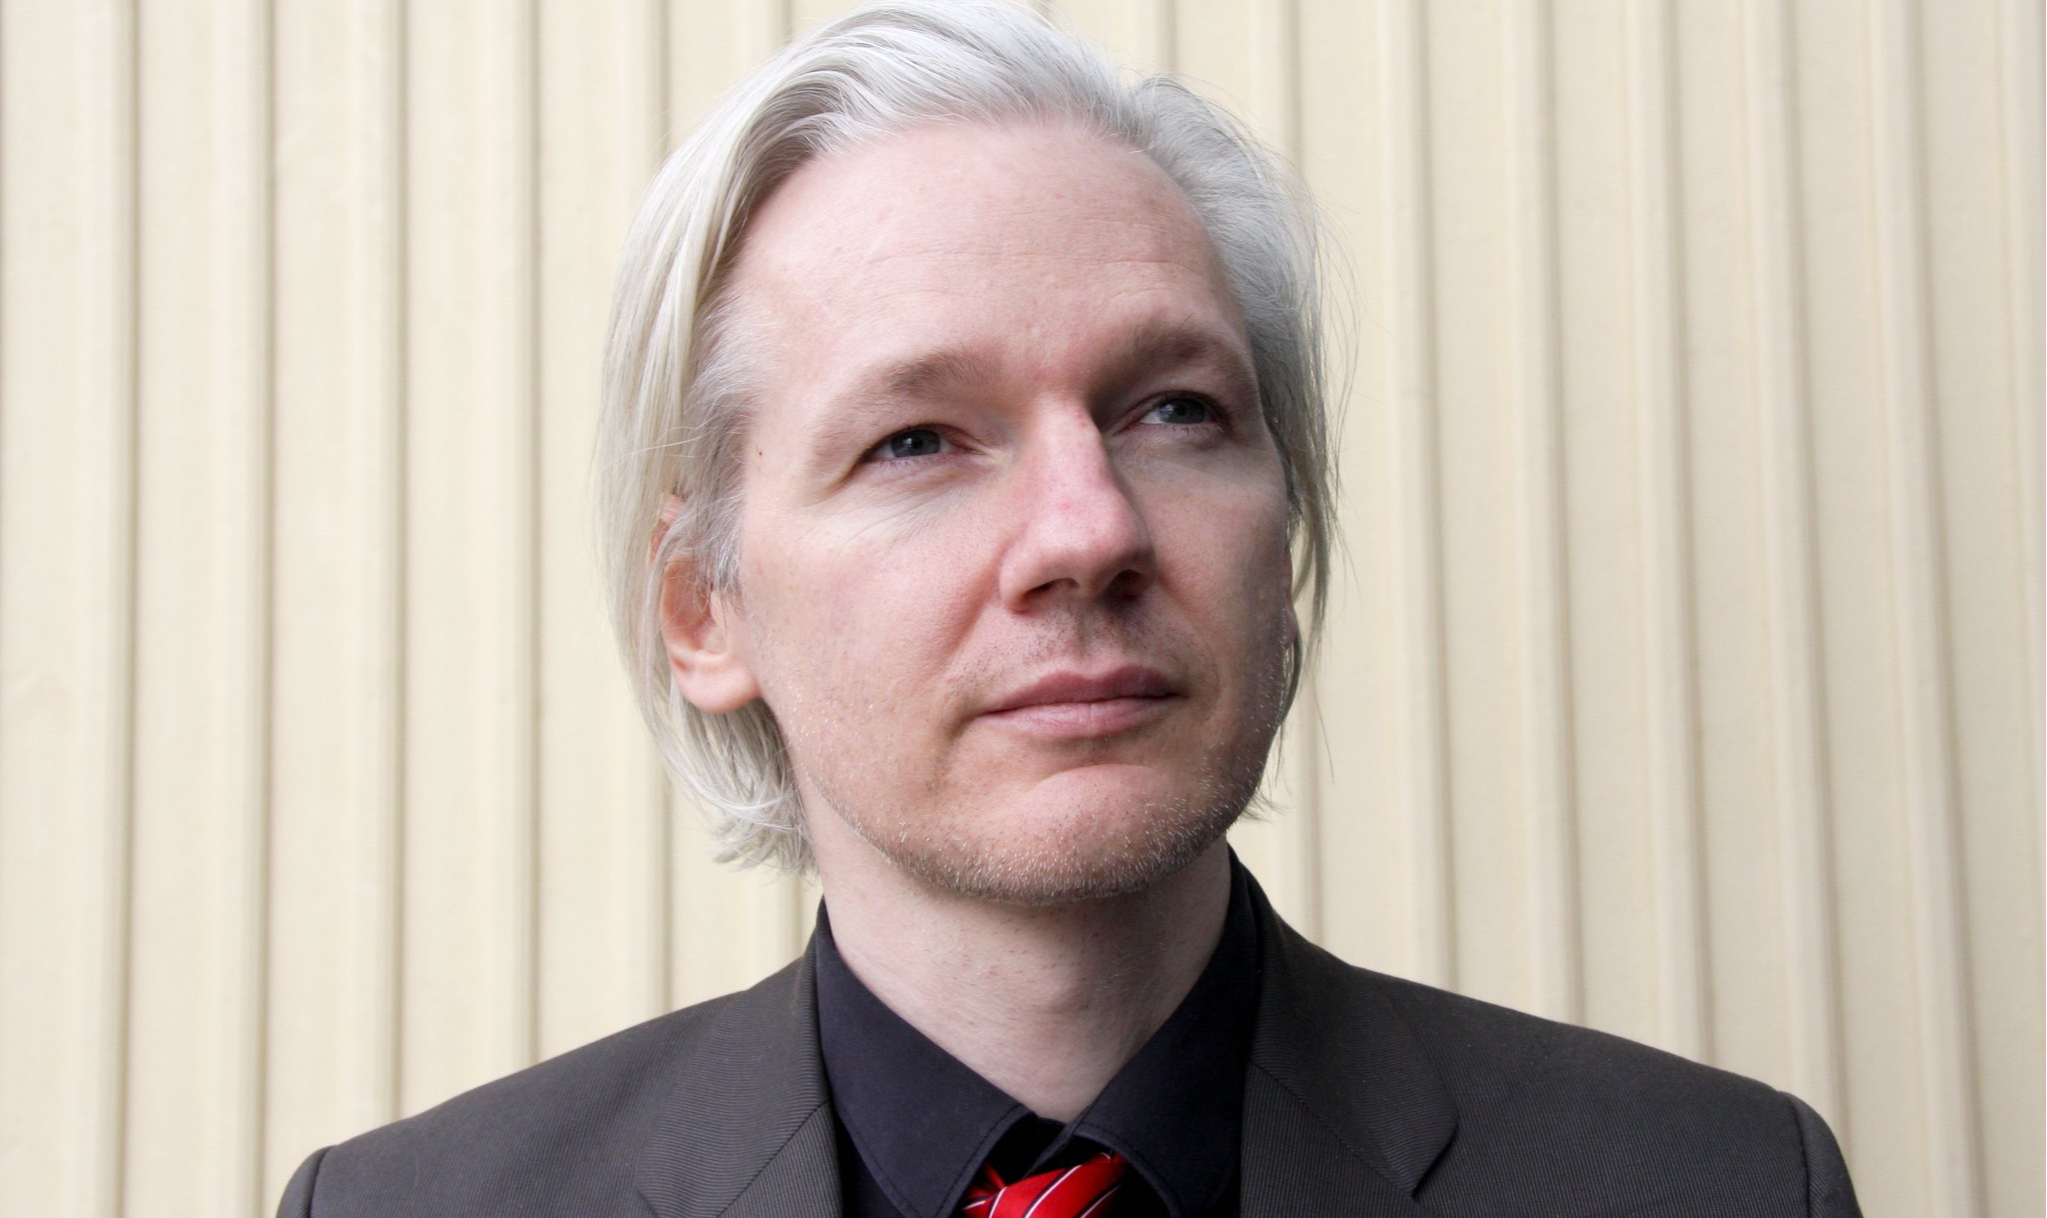 O Fórum reafirma ainda sua oposição à extradição de Assange para os Estados Unidos e repúdio a perseguição promovida por autoridades estadunidenses